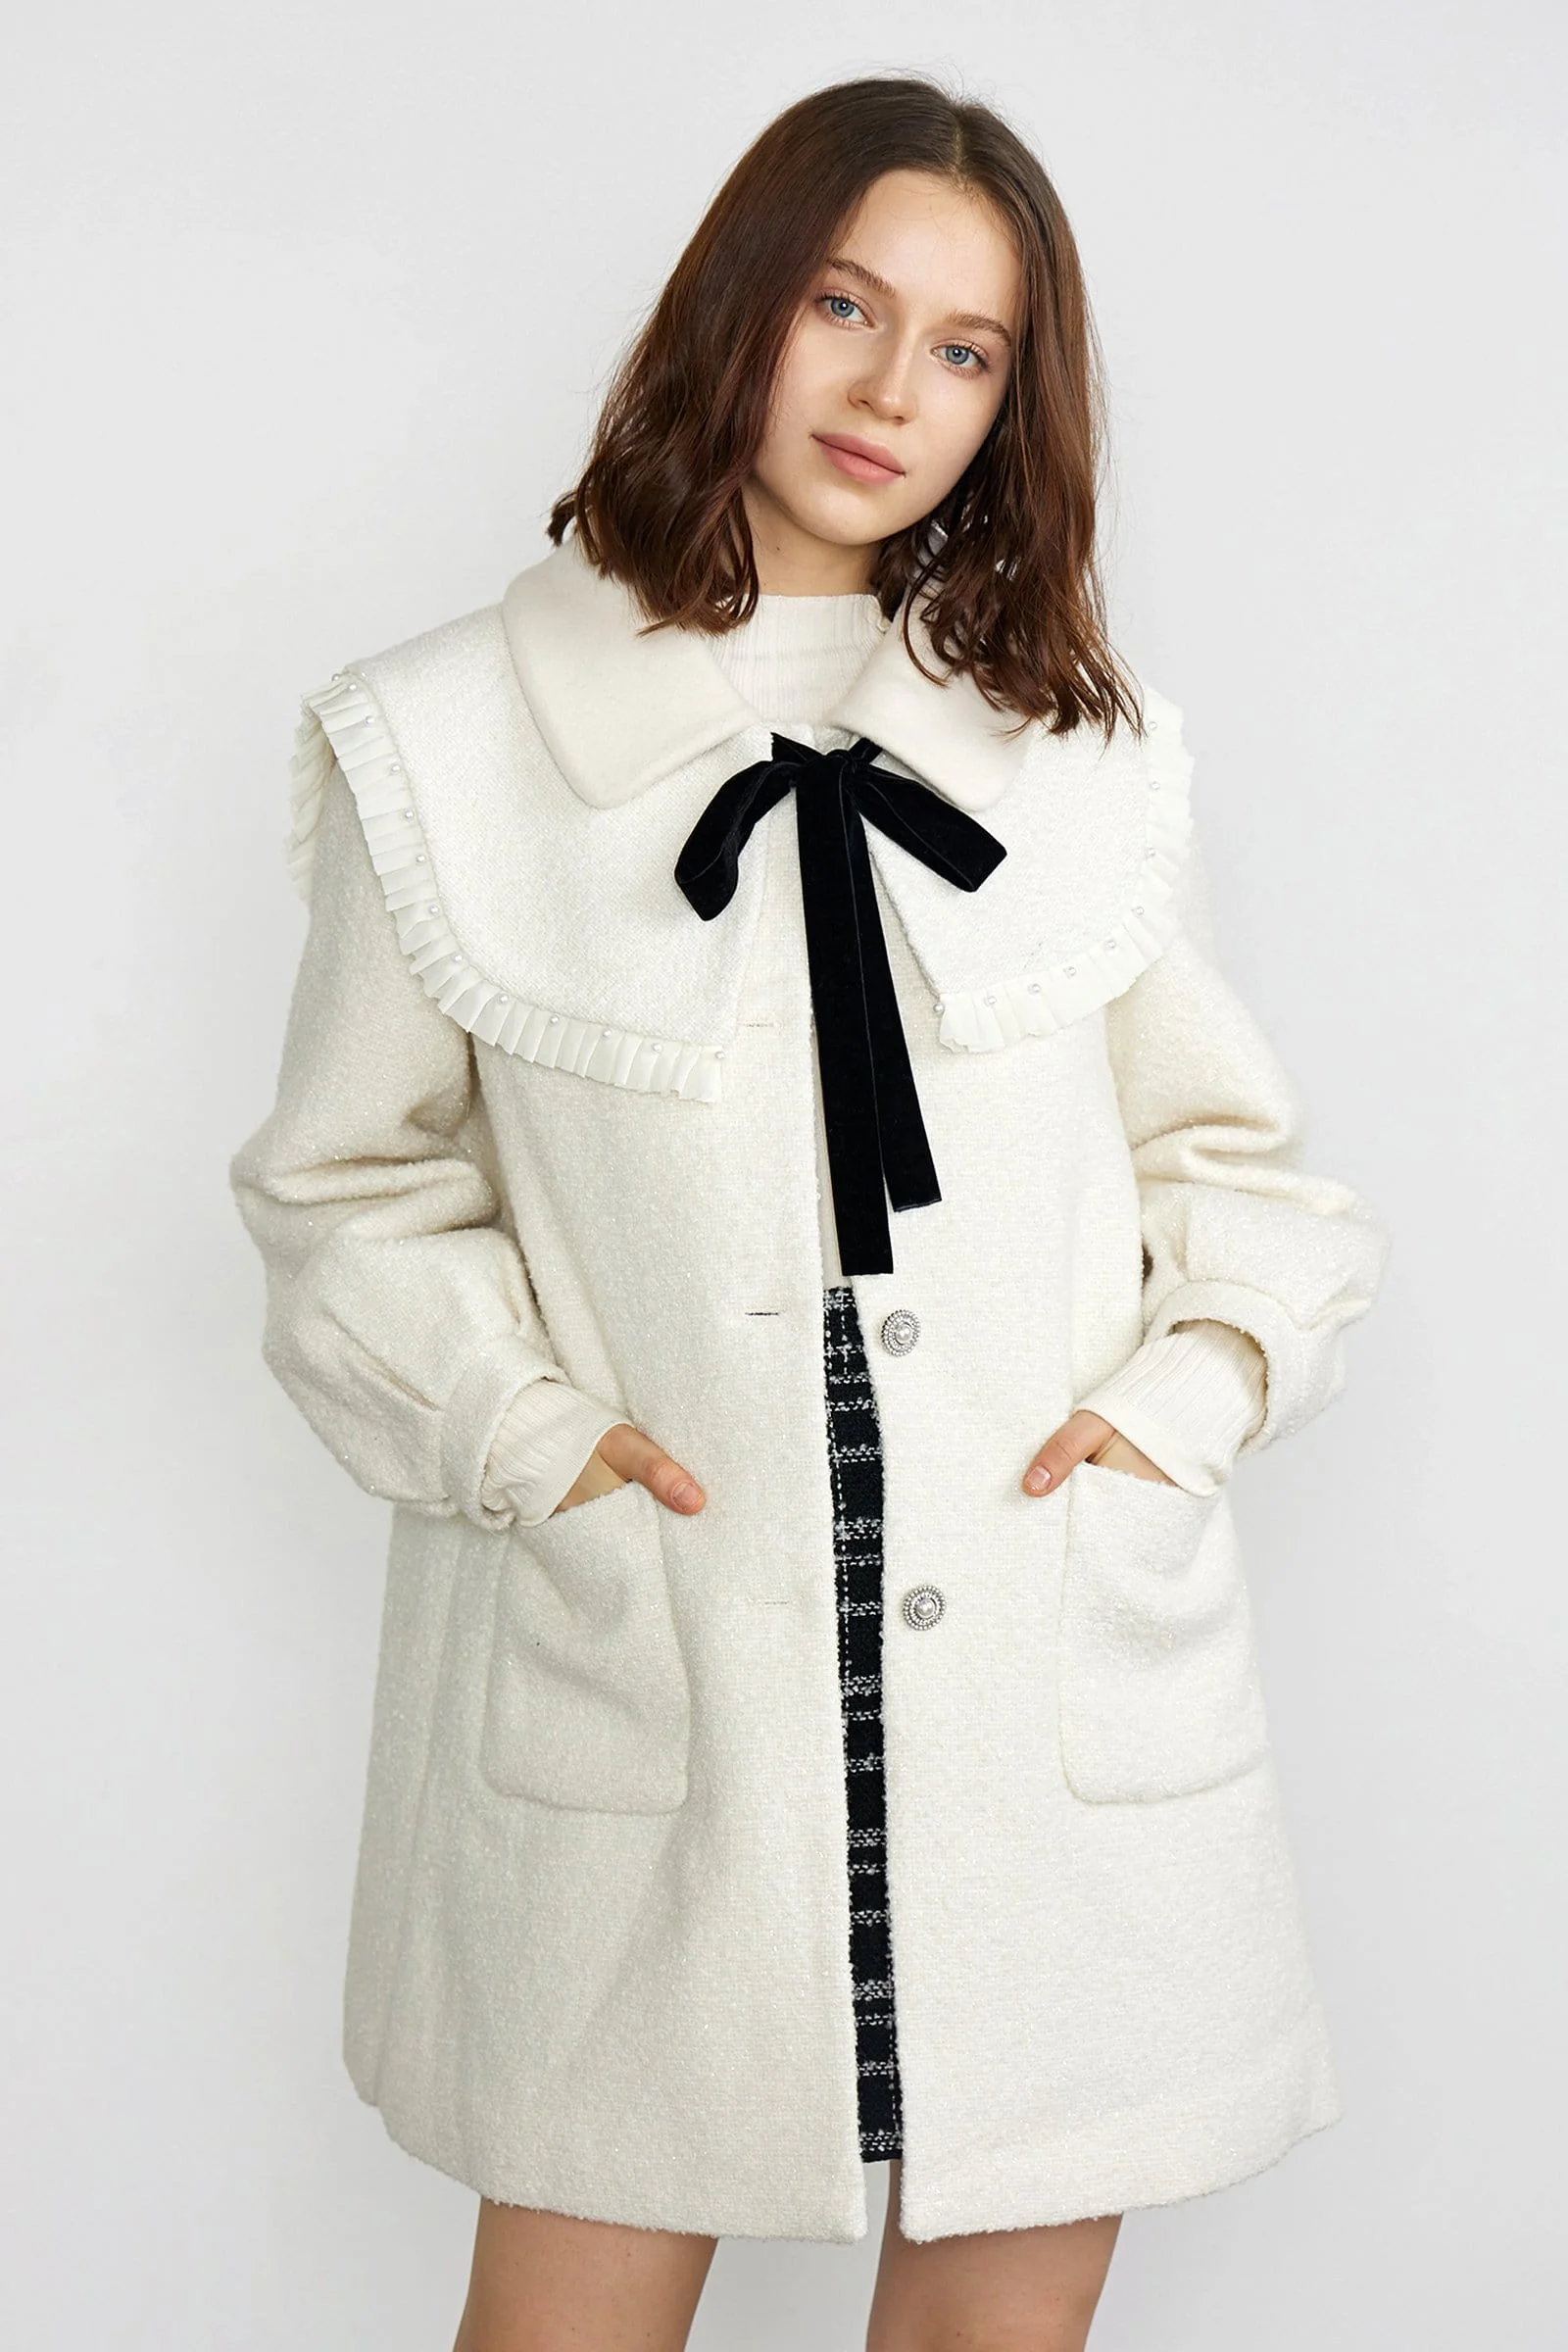 J.ING + Apryl White Premium Wool Frilly Lace Collar Jacket